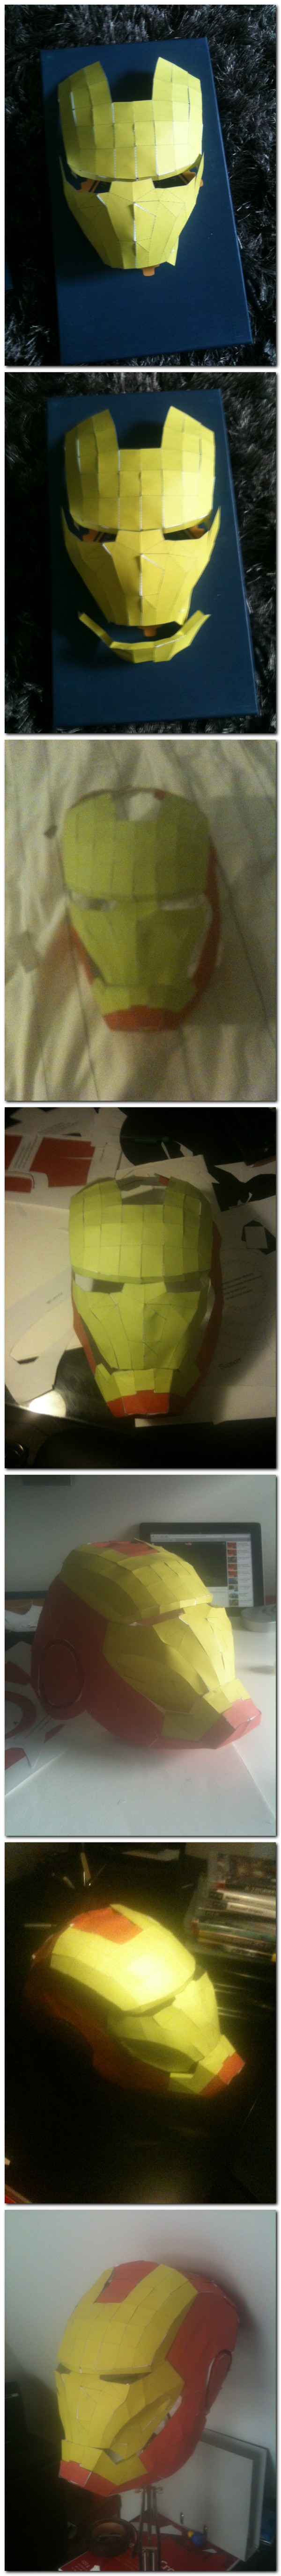 Après Iron Man... Paper Man.